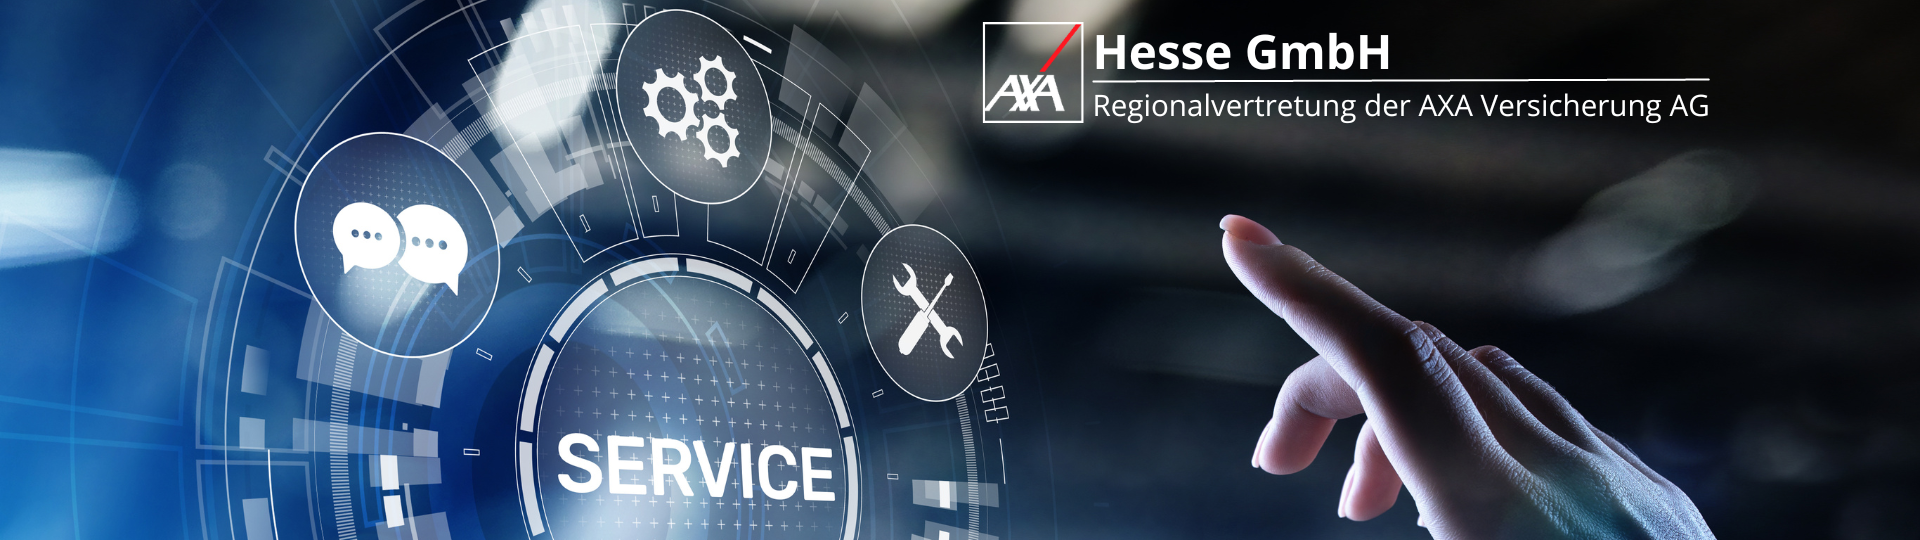 AXA Regionalvertretung Hesse GmbH aus Reutlingen